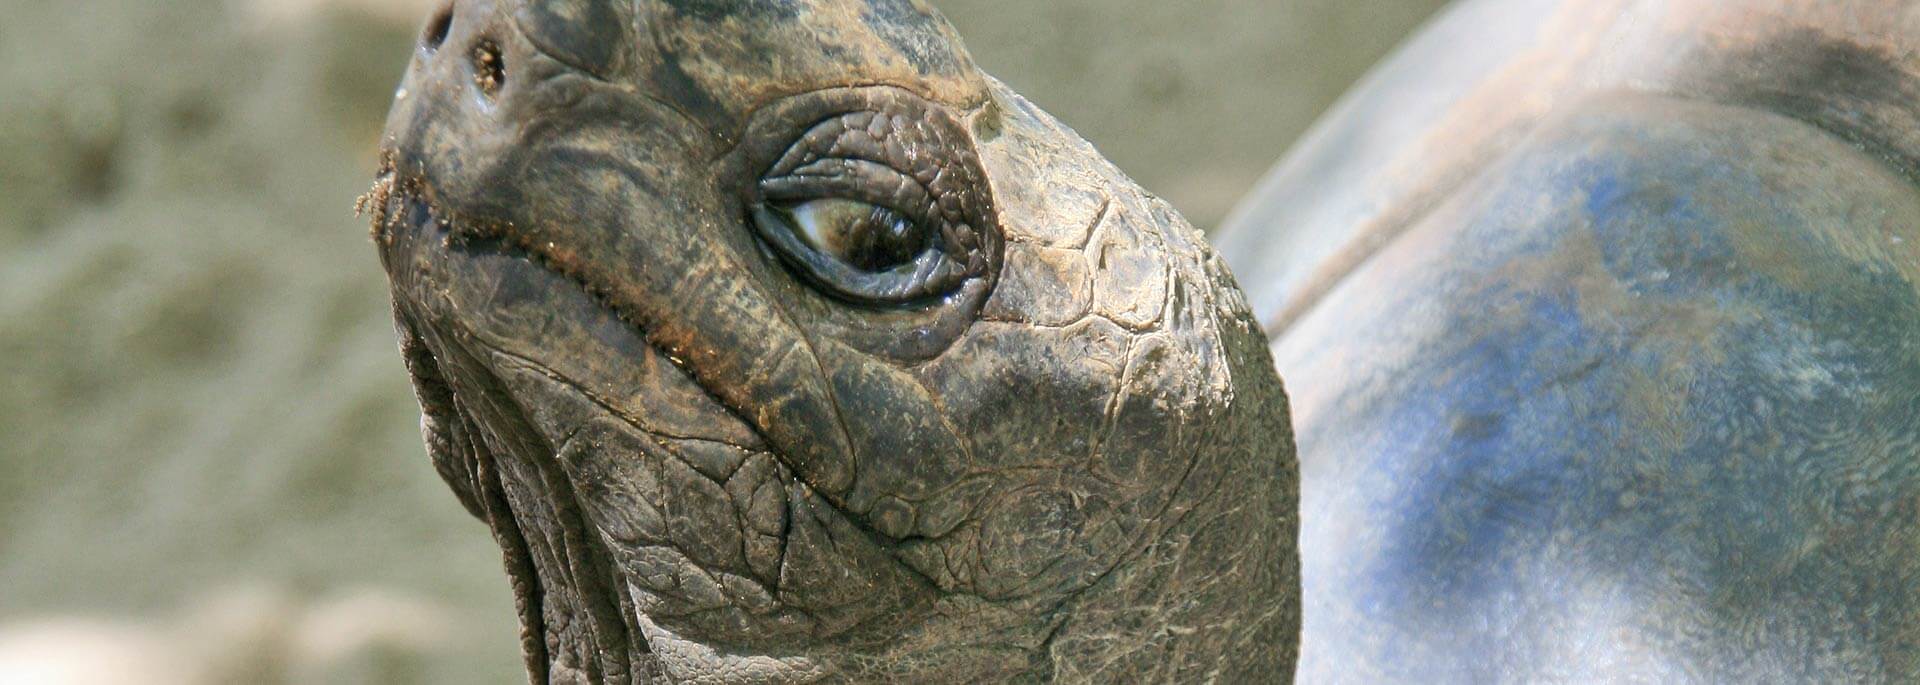 Fotos: Riesenschildkröten auf den Seychellen